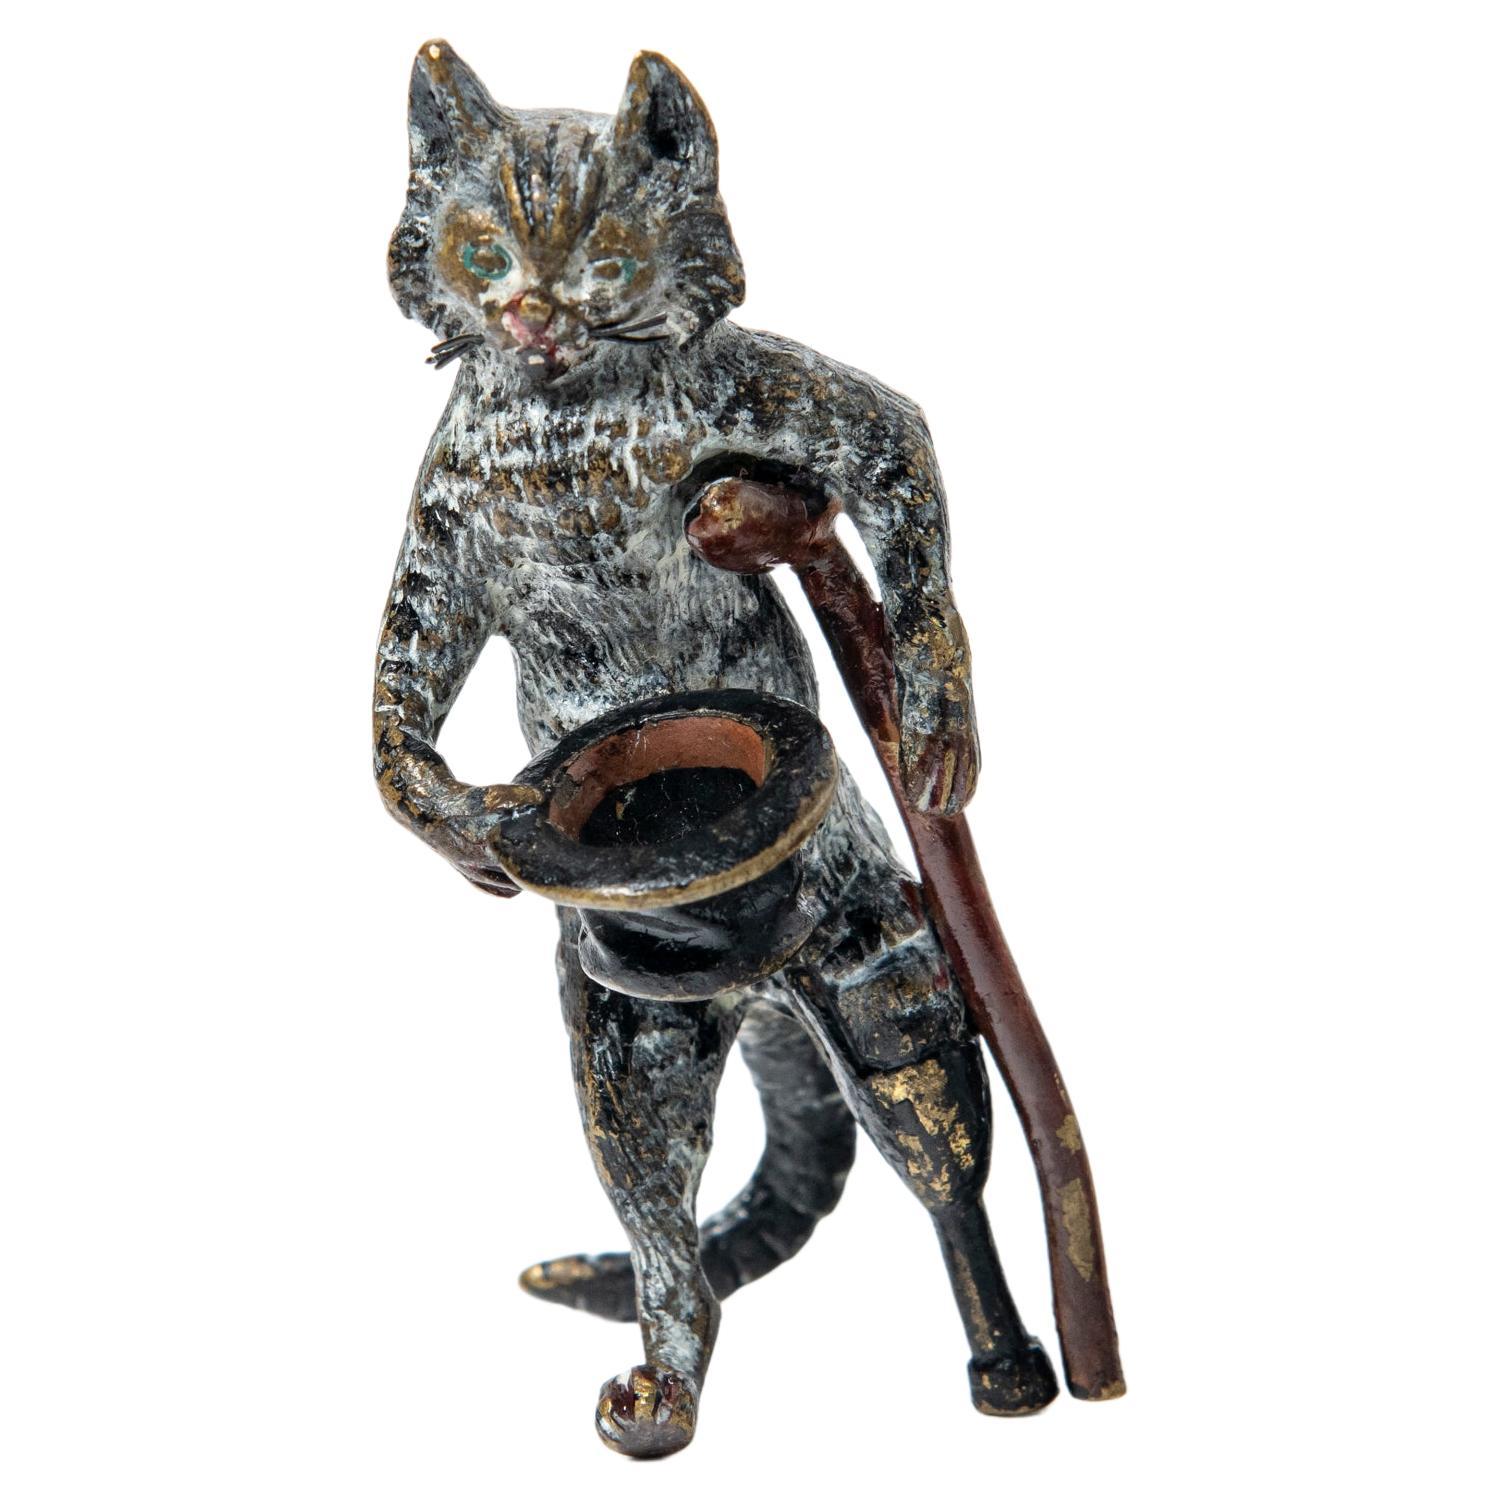  Kalt bemalte Bronzeskulptur einer Katze, die Franz Bergmann zugeschrieben wird. Österreich.